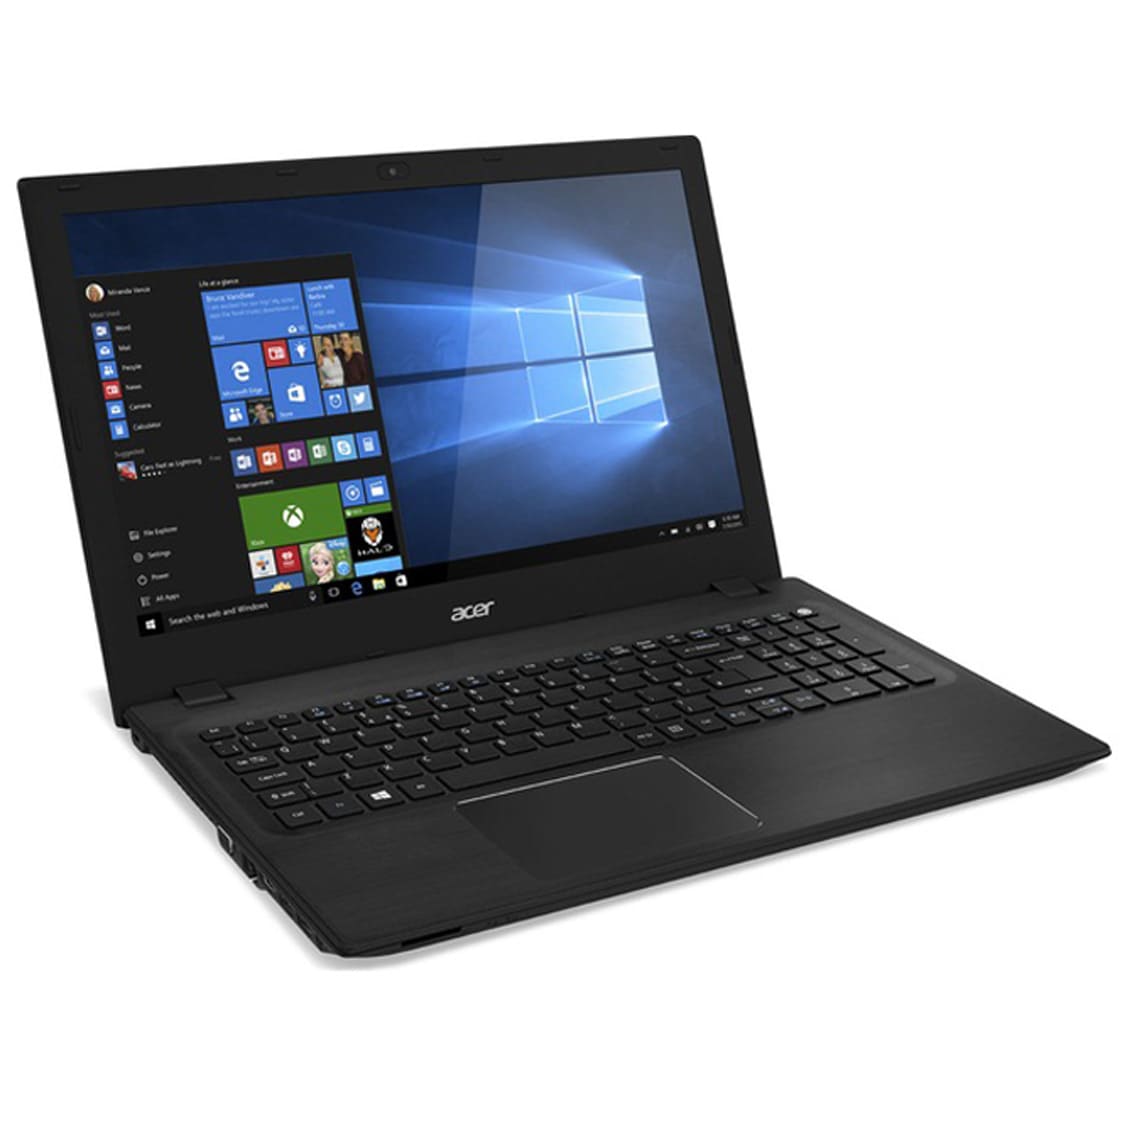 Đánh giá Laptop Acer V5 591G 51J7NX: Thiết kế đẹp, cấu hình khủng, màn hình rộng sắc nét